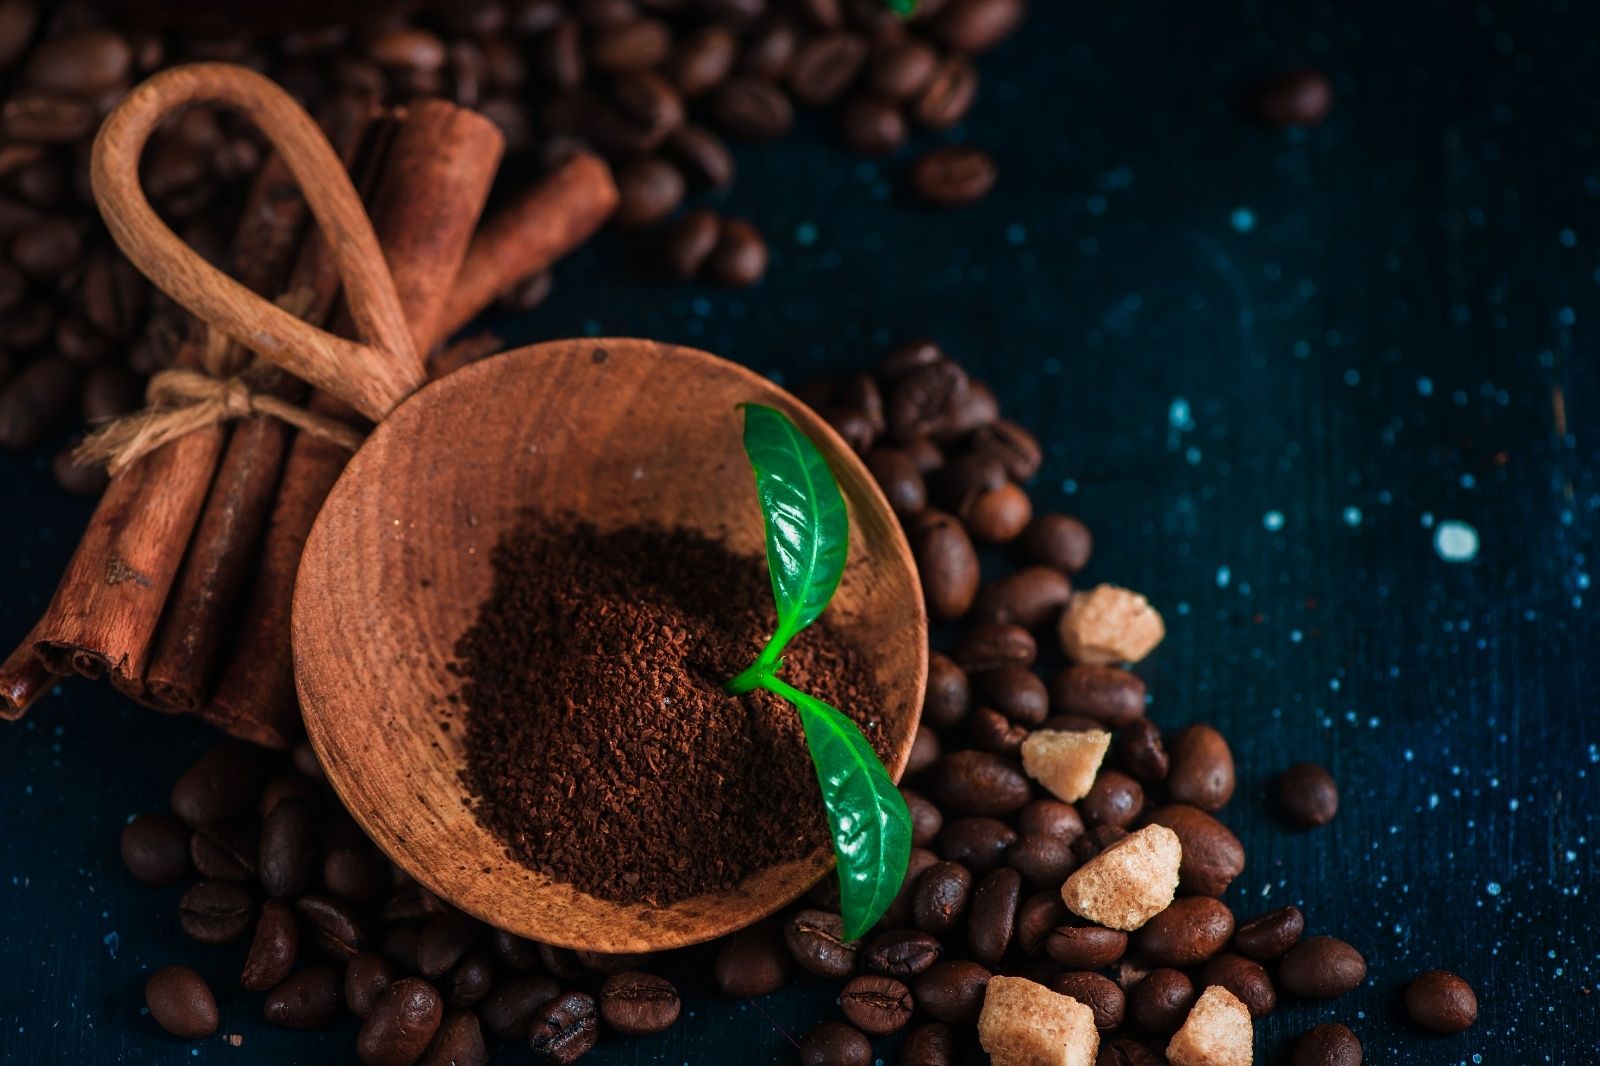 OHNE upcycling: Kaffeesatz als Dünger